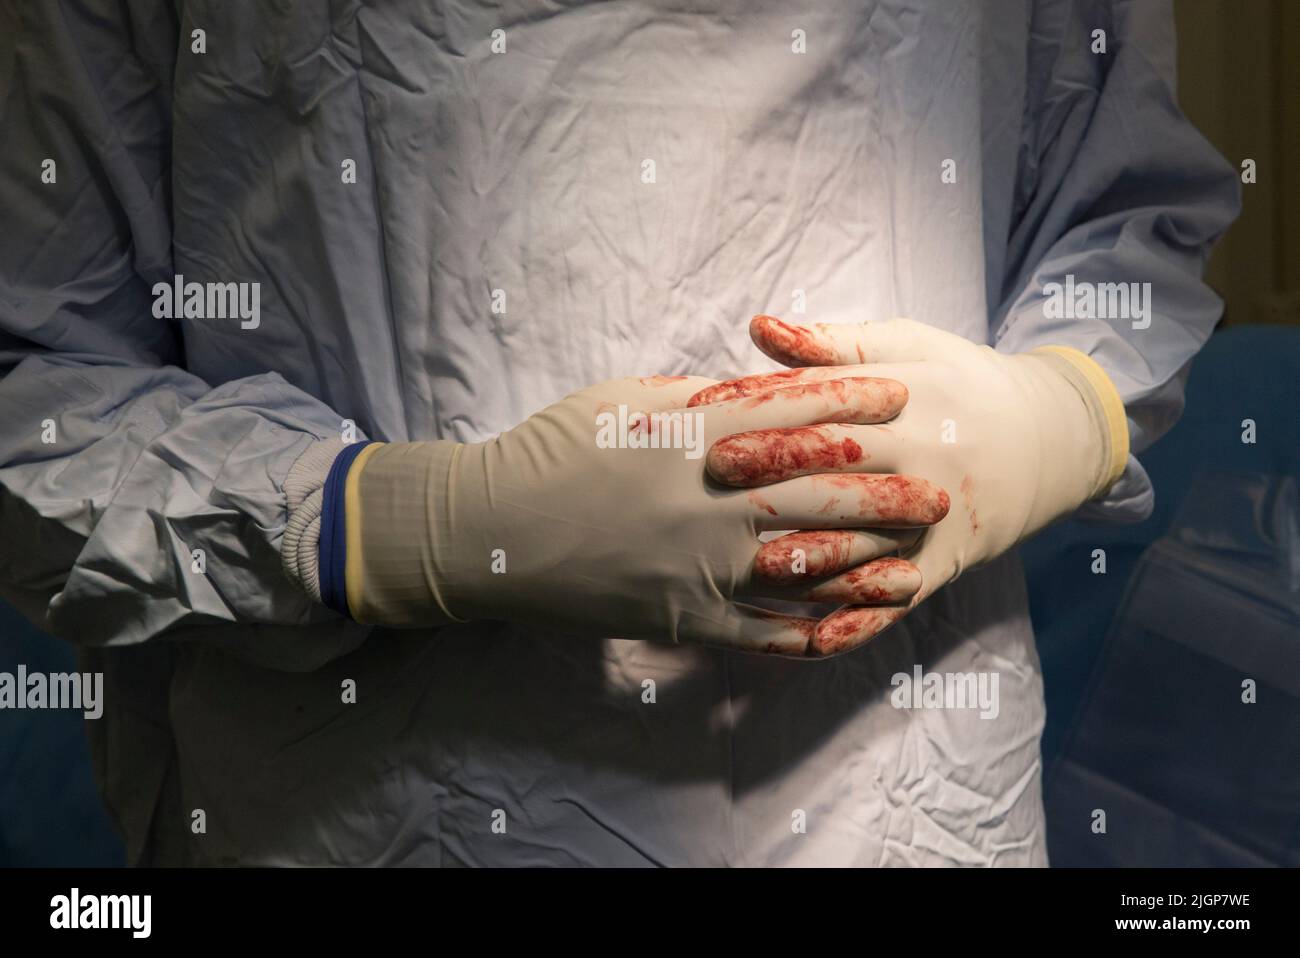 Nahaufnahme der Hände eines Chirurgen während einer NHS-Operation. Er führt eine Knieoperation durch und seine Handschuhe sind mit Blut befleckt. Stockfoto